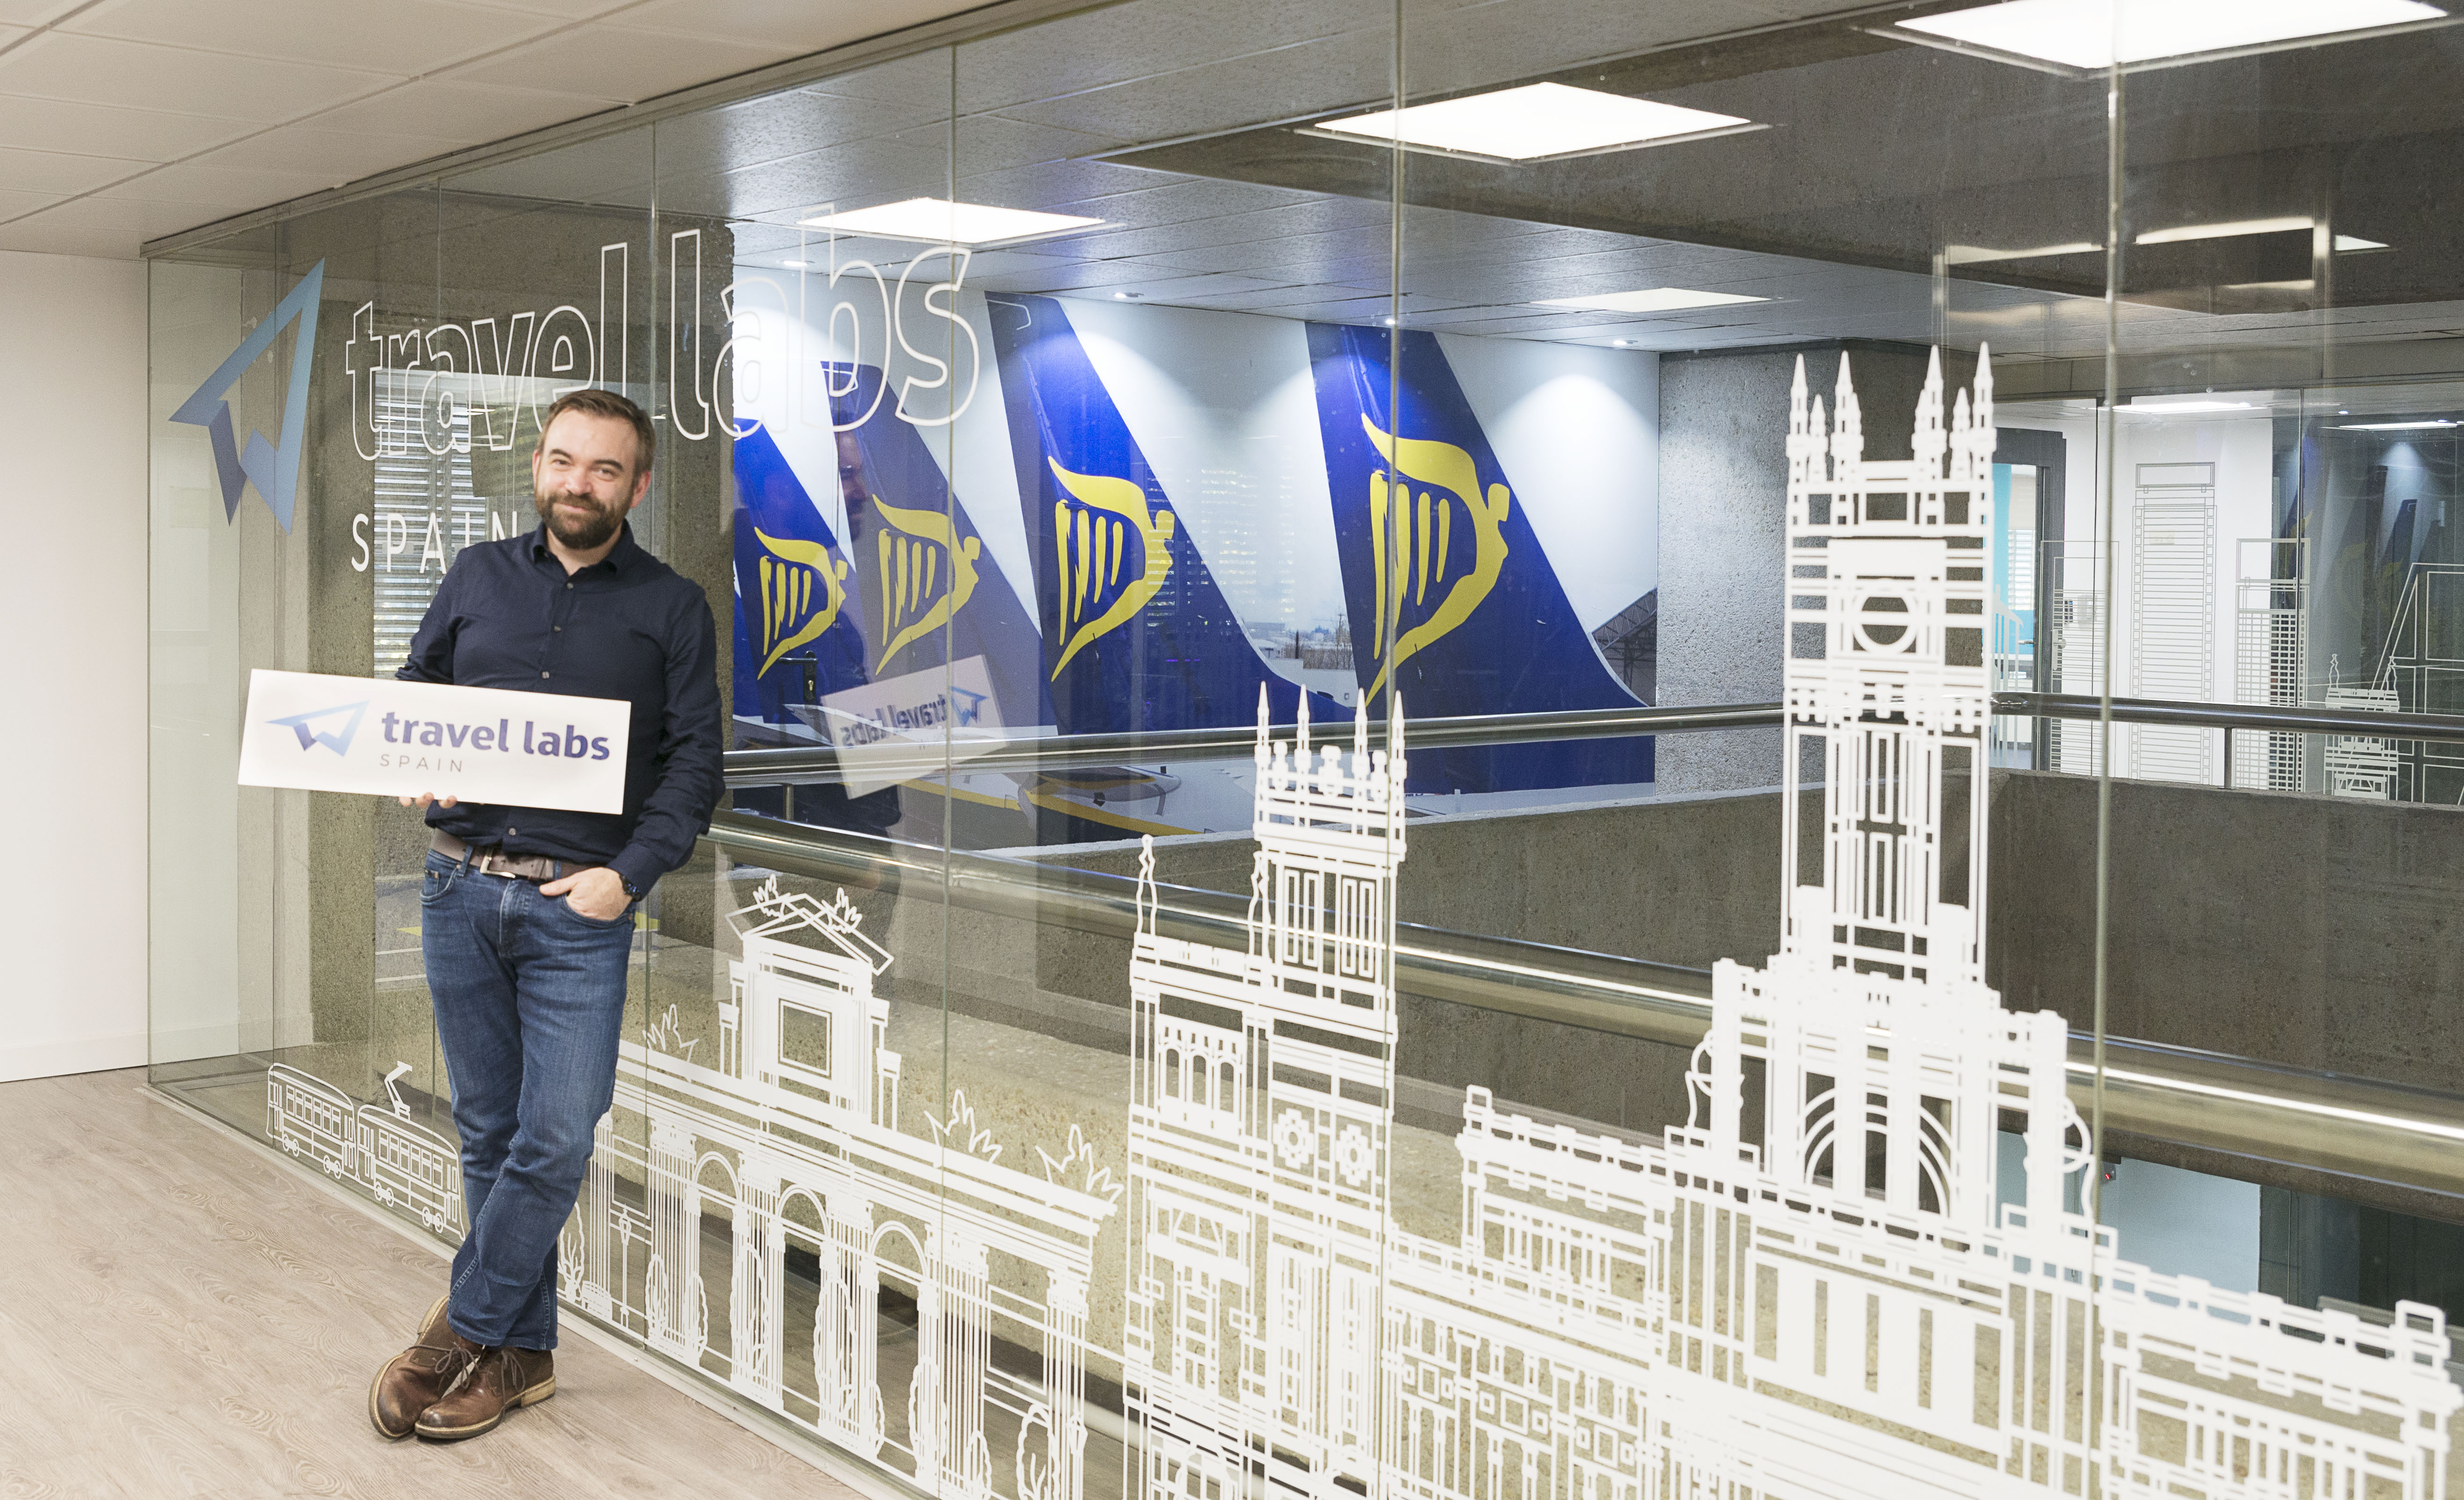 Ryanair Inaugura Os Travel Labs Espanha Com 50 Vagas Preenchidas